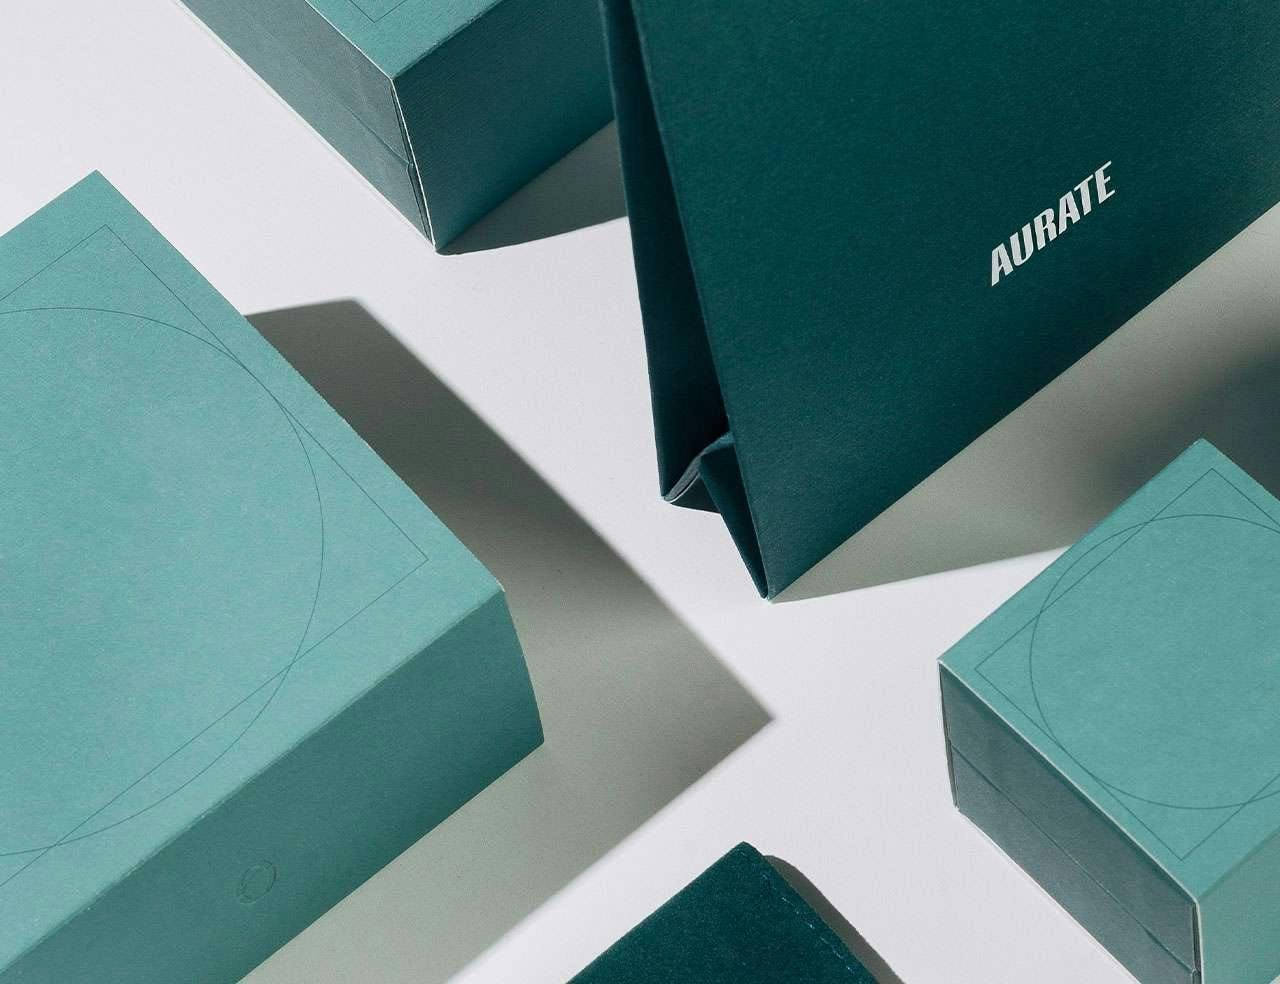 Aurate - Packaging Design, Website Design, and Digital Ad Design